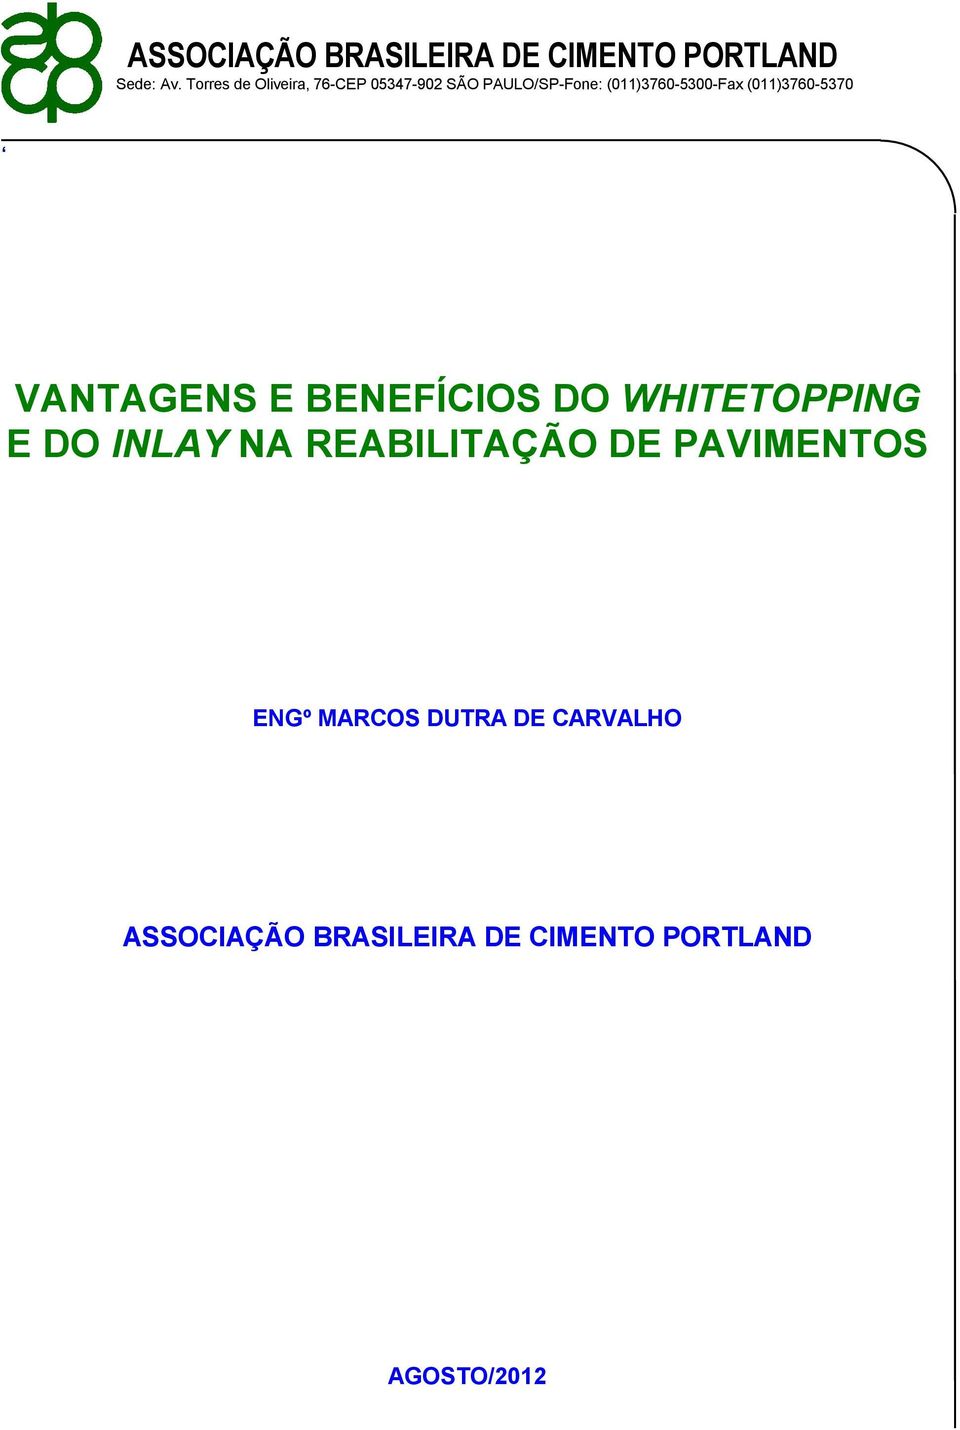 (011)3760-5370 VANTAGENS E BENEFÍCIOS DO WHITETOPPING E DO INLAY NA